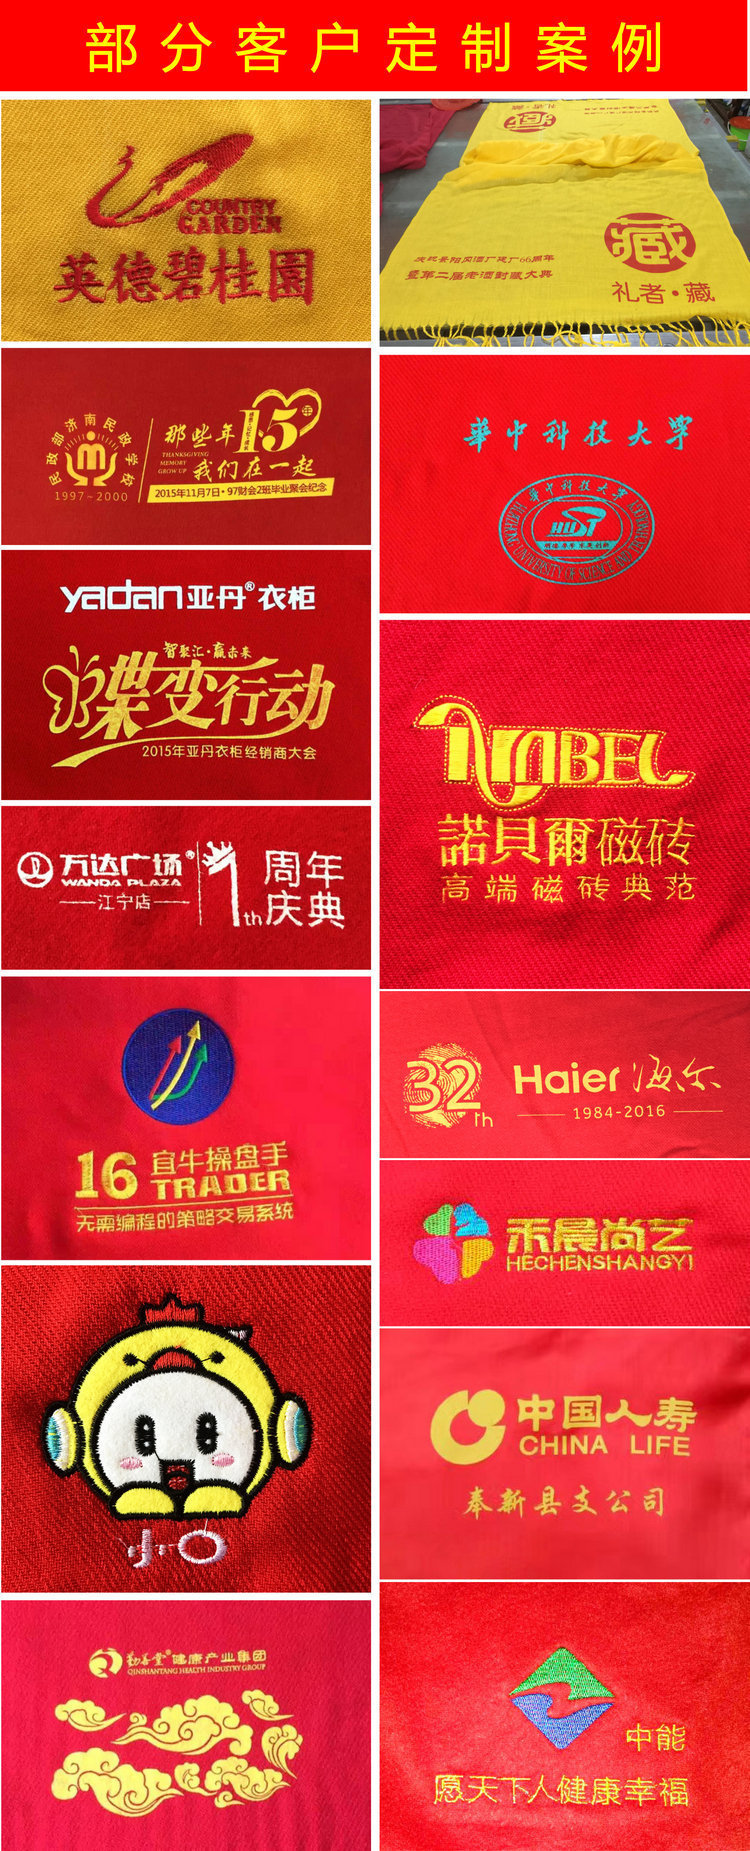 厂家直销双面绒羊绒围巾开业活动年会聚会中国红围巾定制刺绣logo示例图7